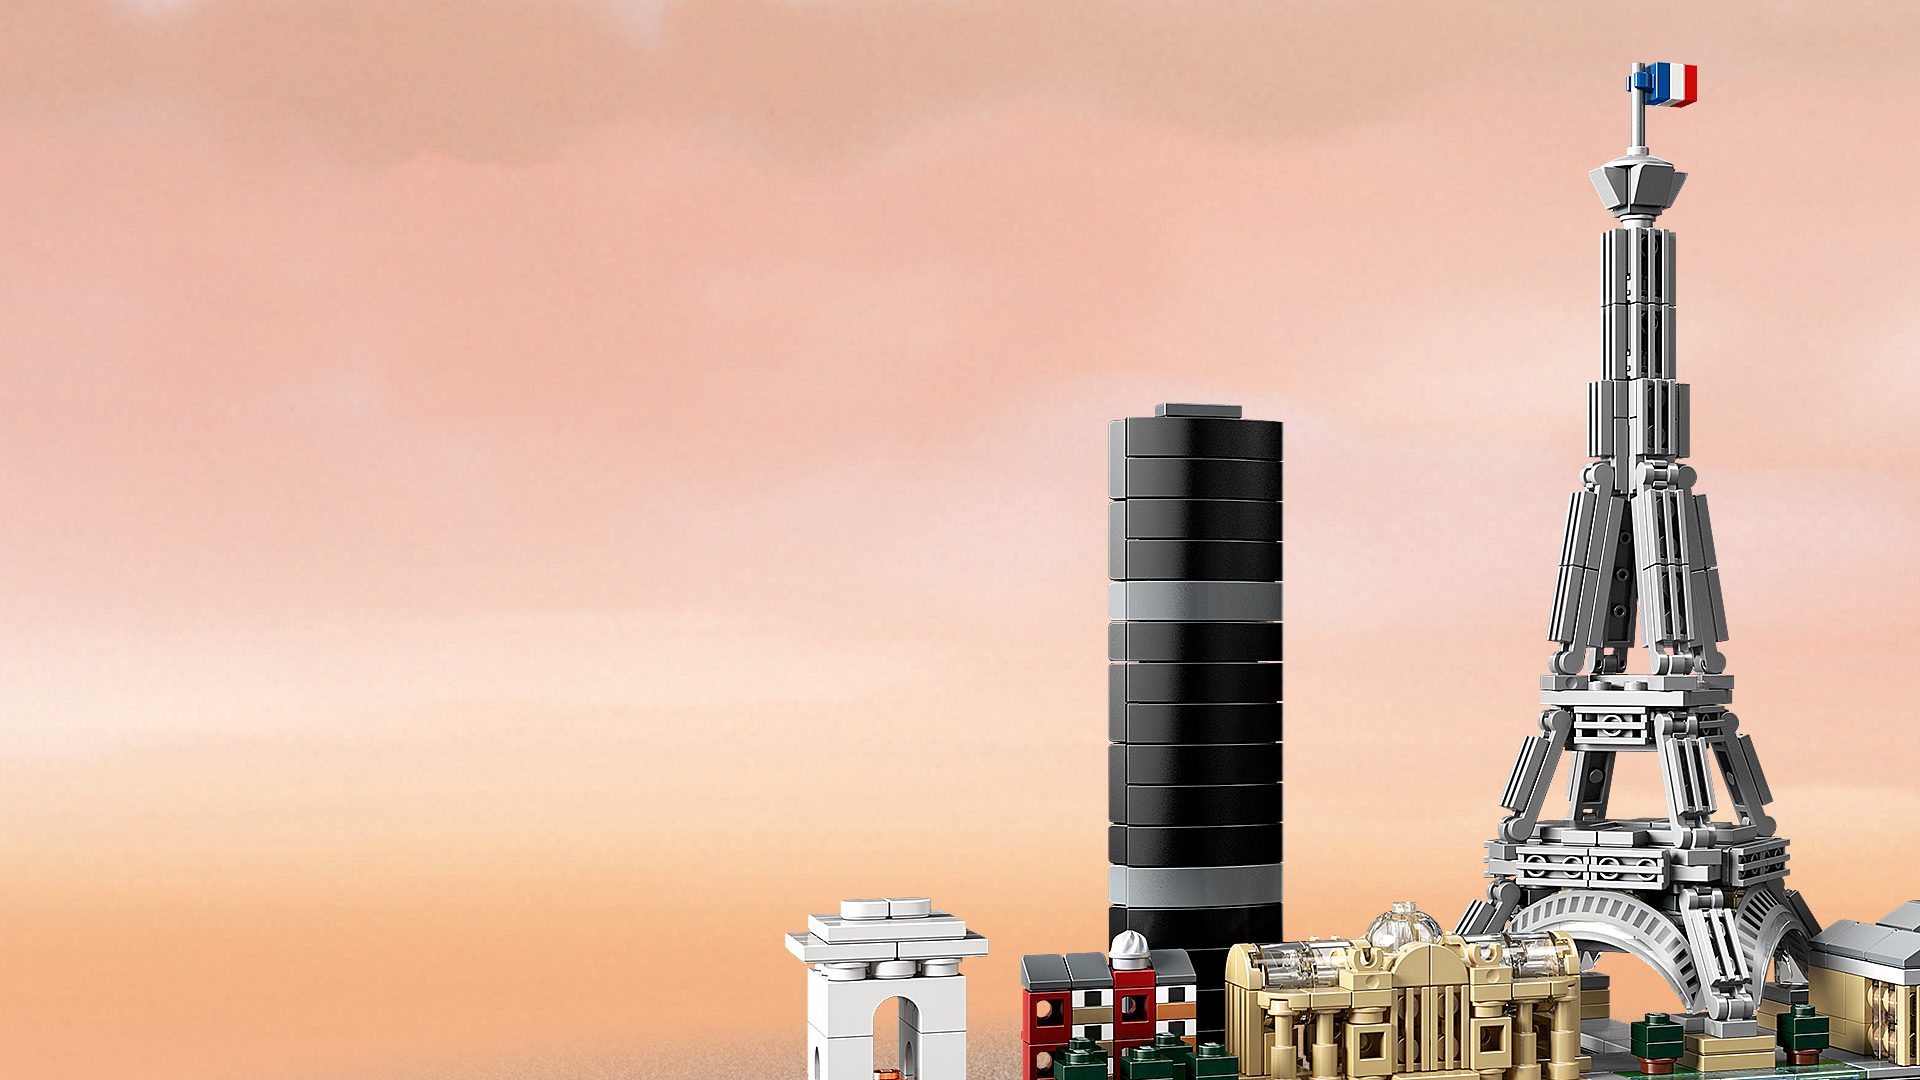 lego city background image